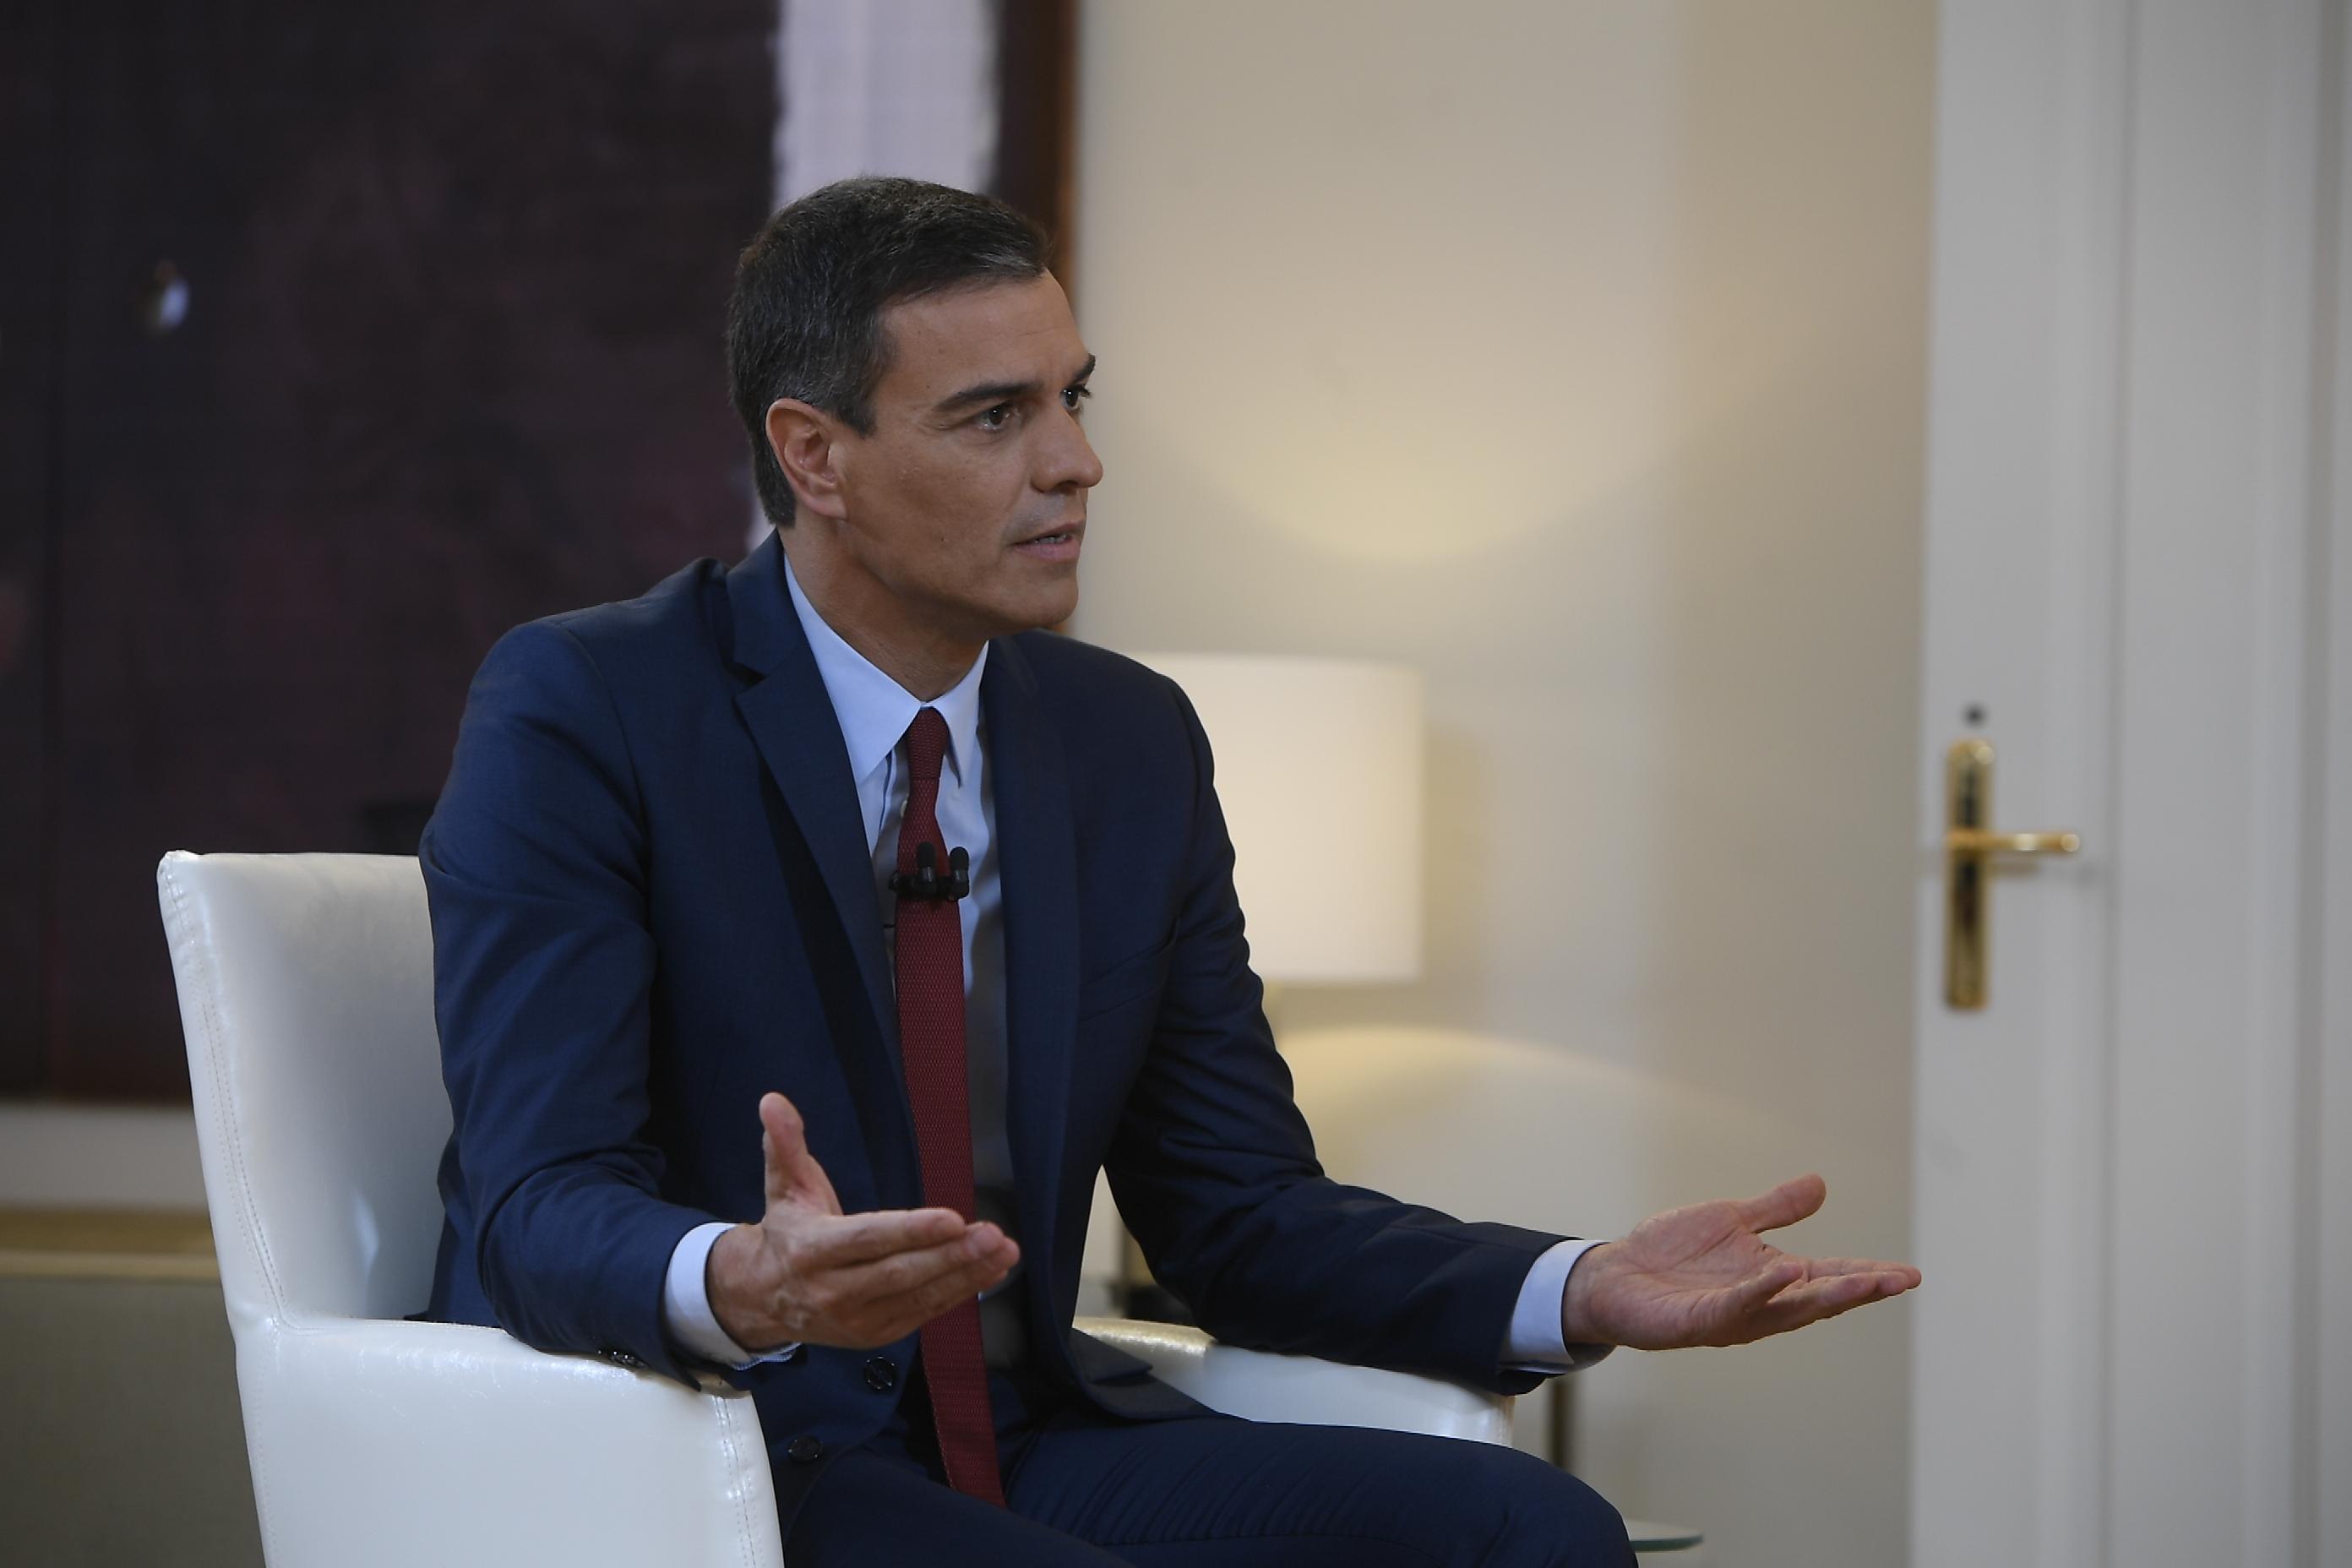 El presidente en funciones Pedro Sánchez durante su entrevista en 'Al Rojo Vivo' realizada por Antonio García Ferreras. La Moncloa